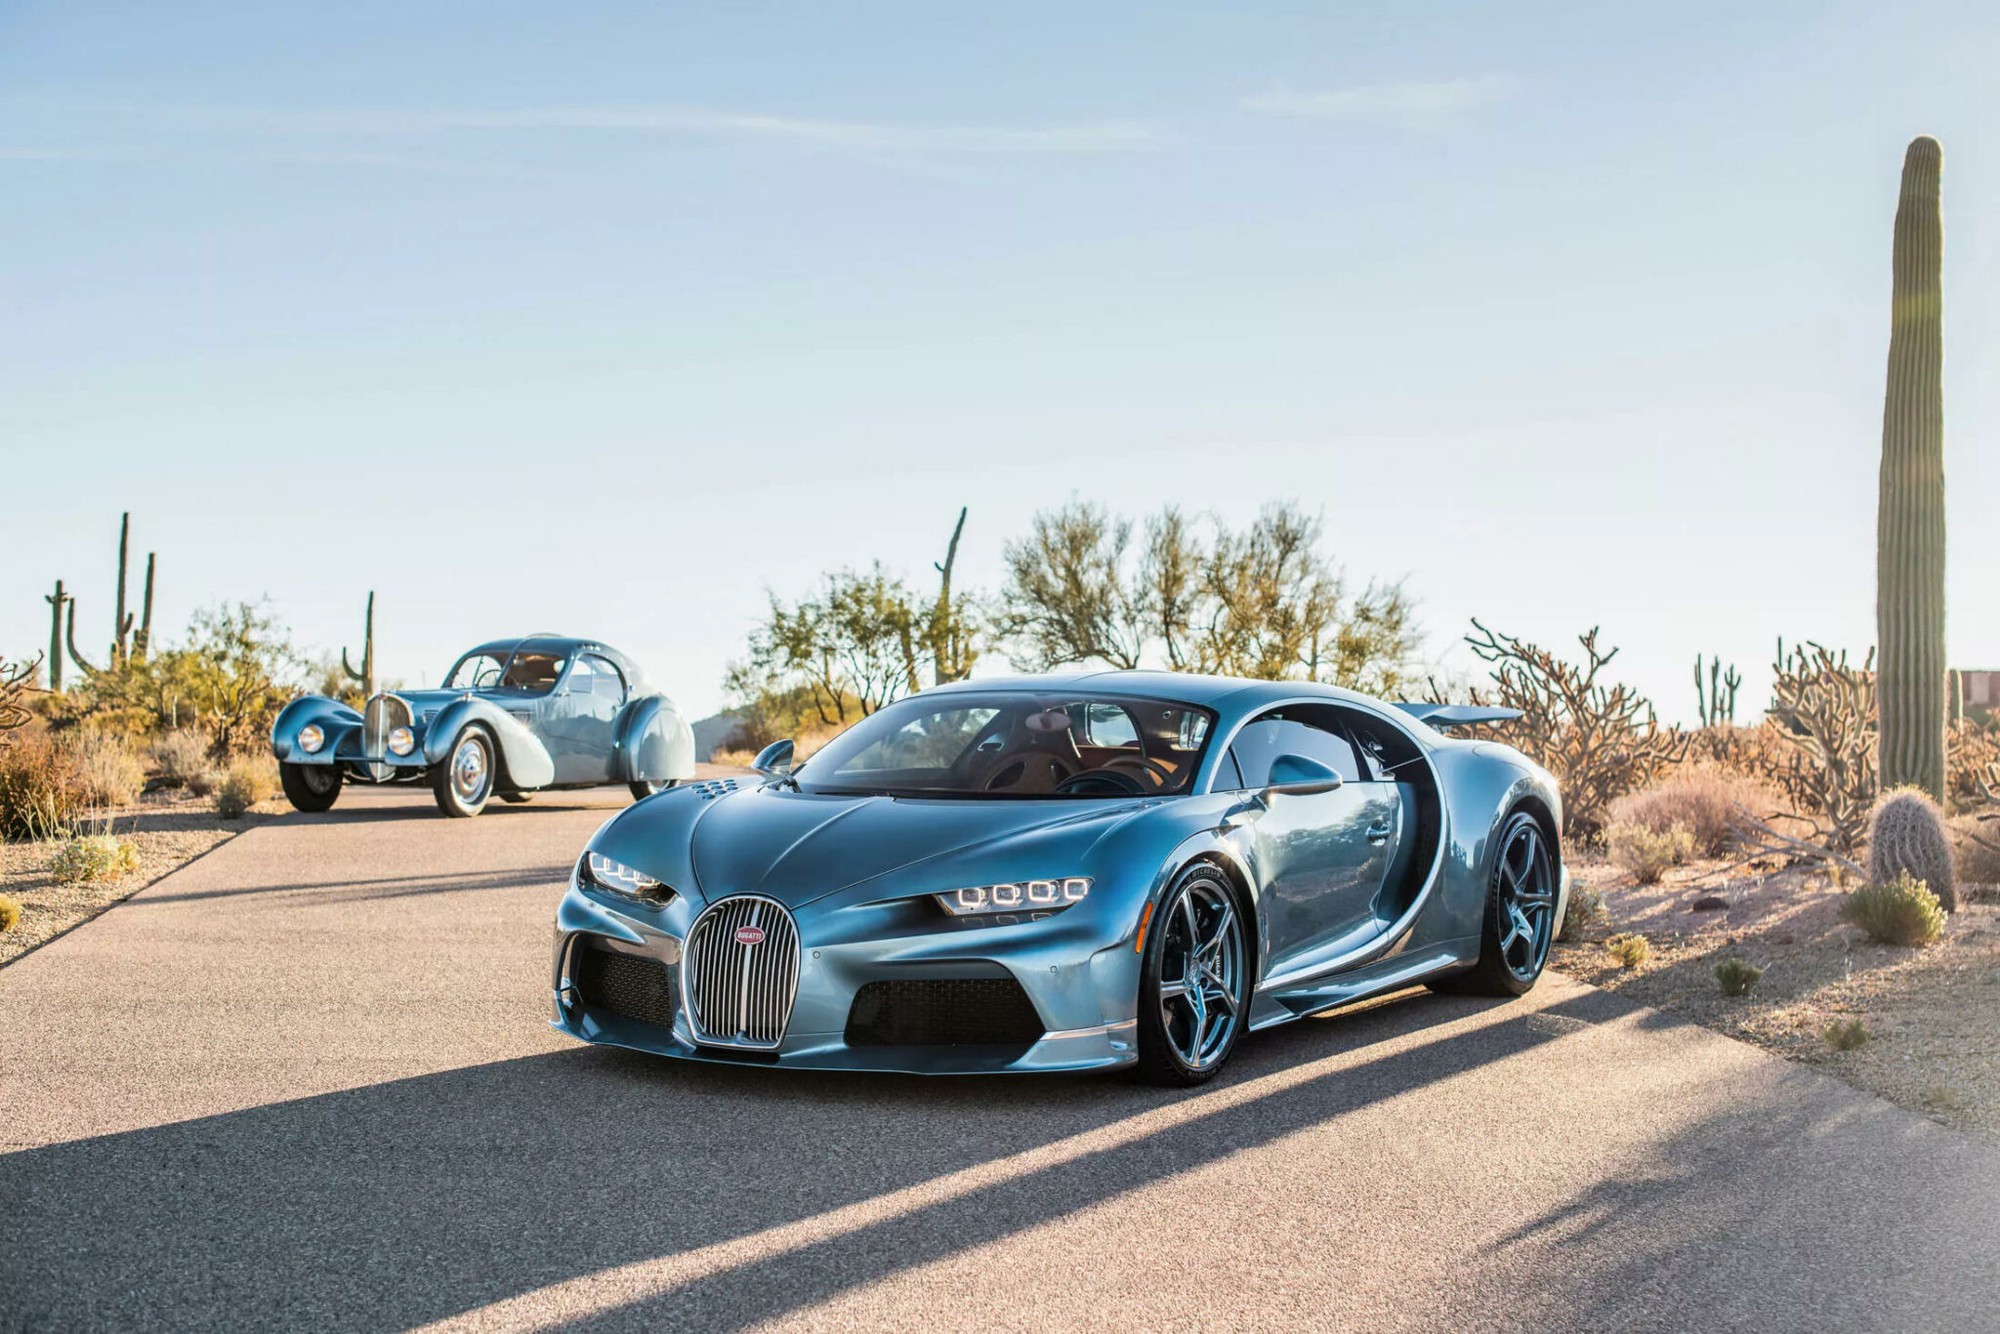 Khám phá siêu xe Bugatti Chiron Super Sport “57 One of One” độc nhất thế giới - Ảnh 1.